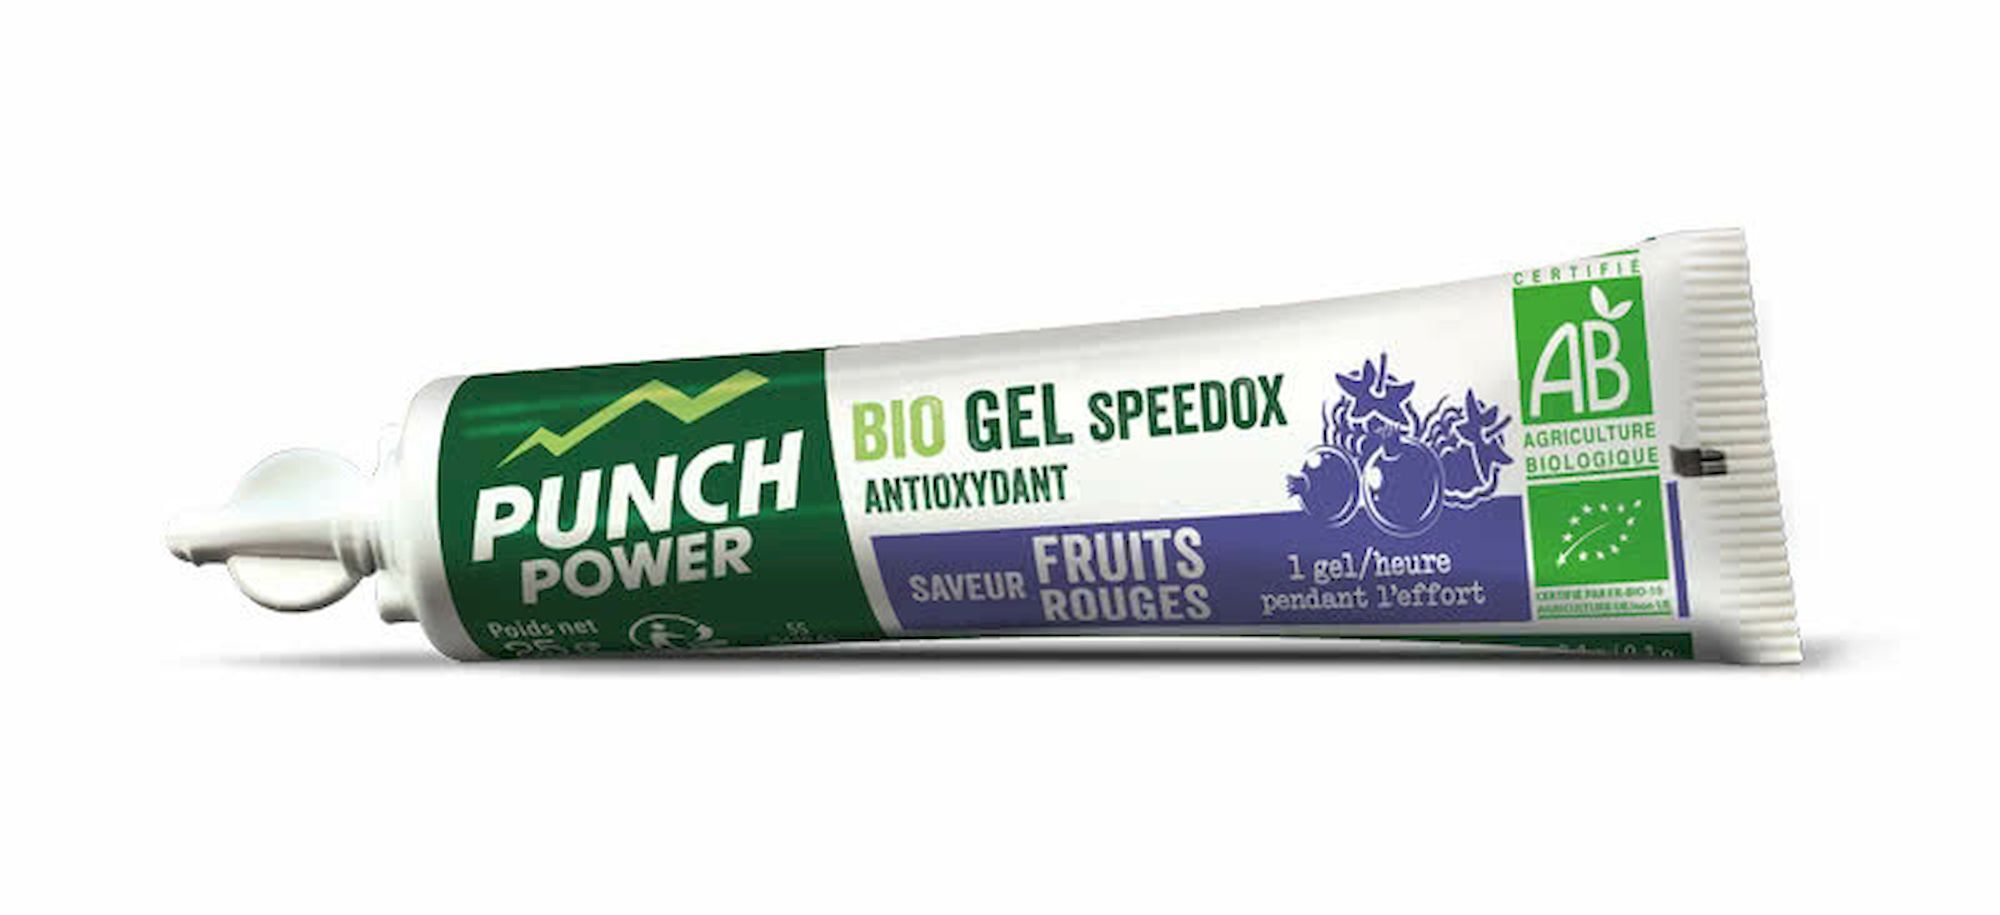 Punch Power Speedox Fruits Rouges x 6 - Energy gel | Hardloop